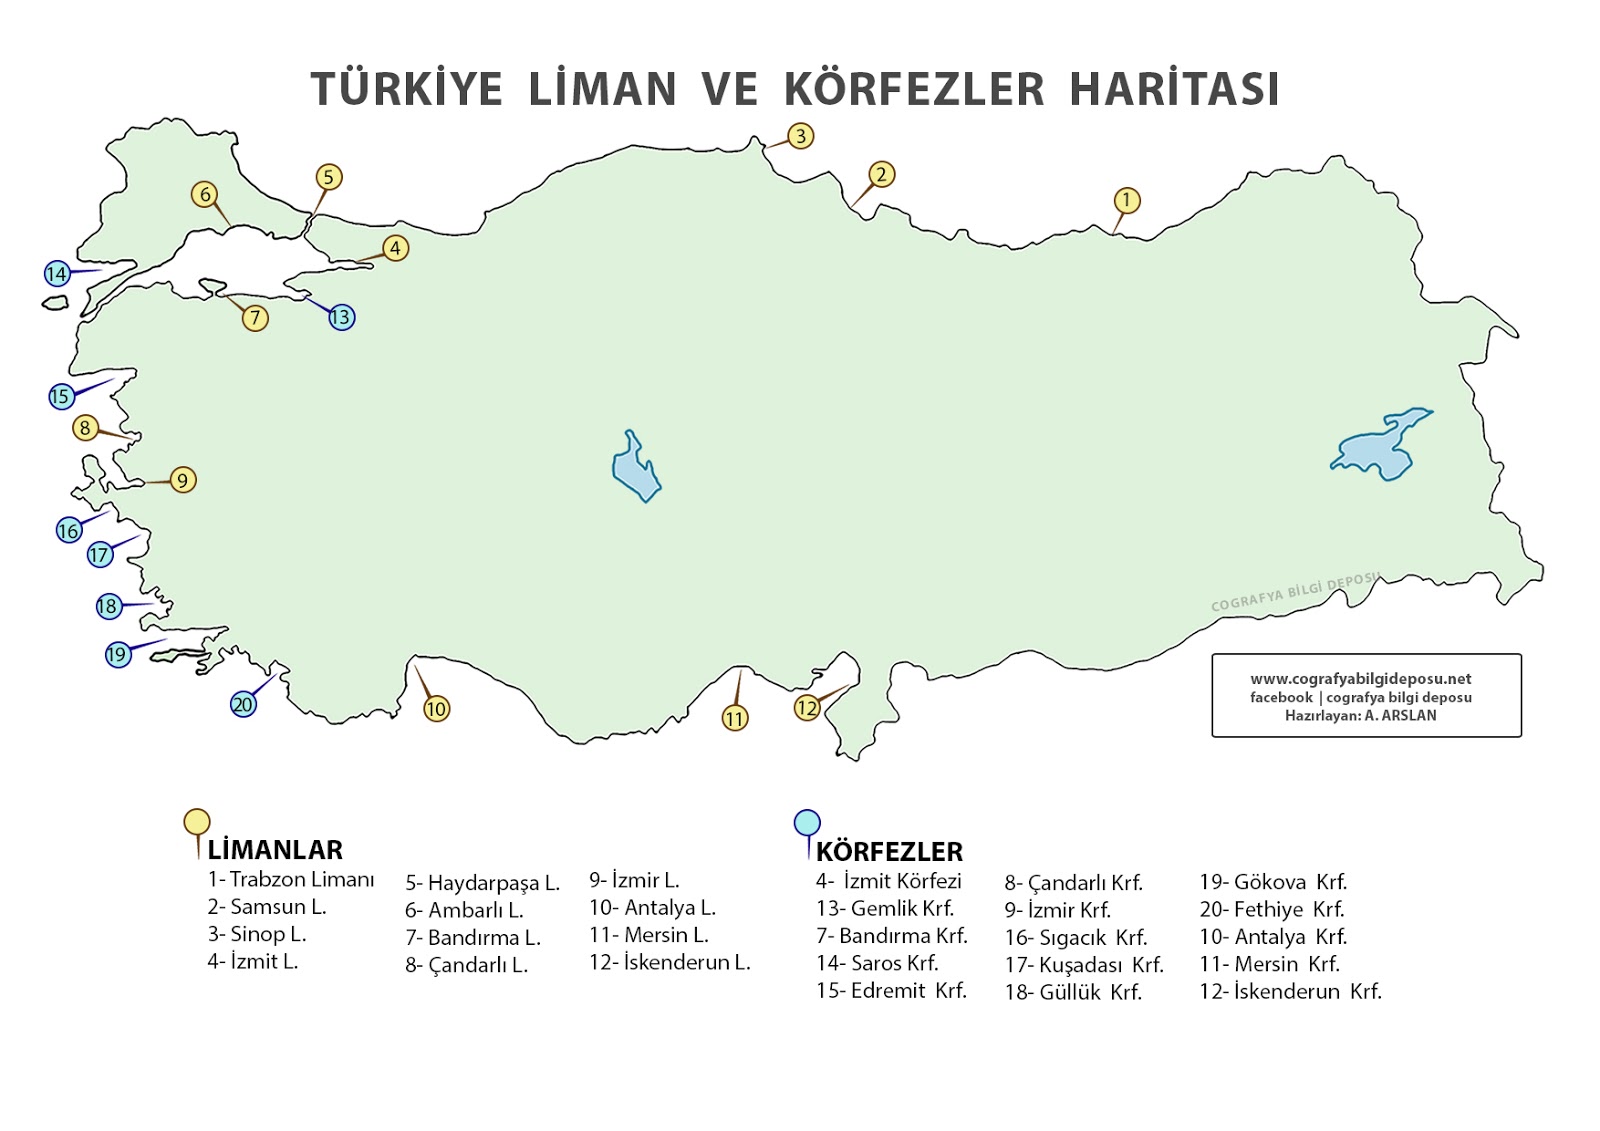 Cografya Bilgi Deposu Turkiye Dilsiz Haritalari